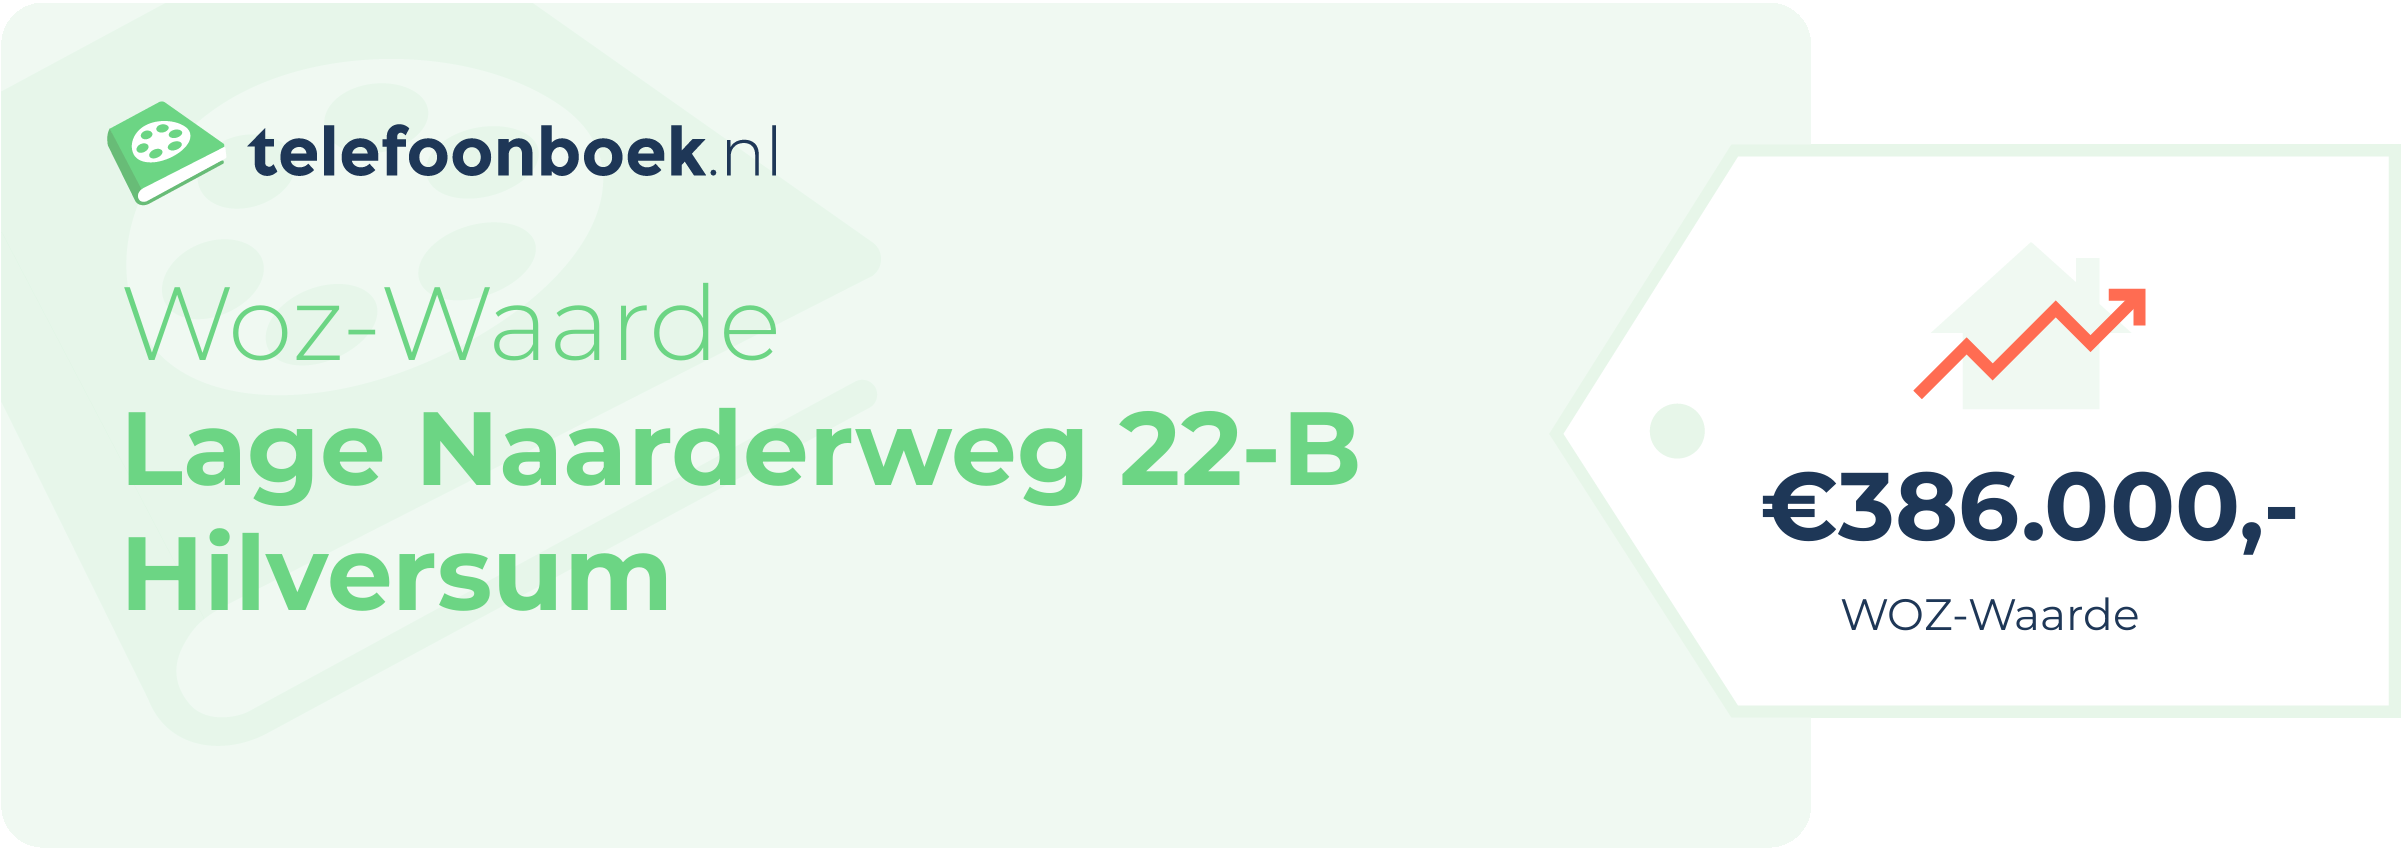 WOZ-waarde Lage Naarderweg 22-B Hilversum